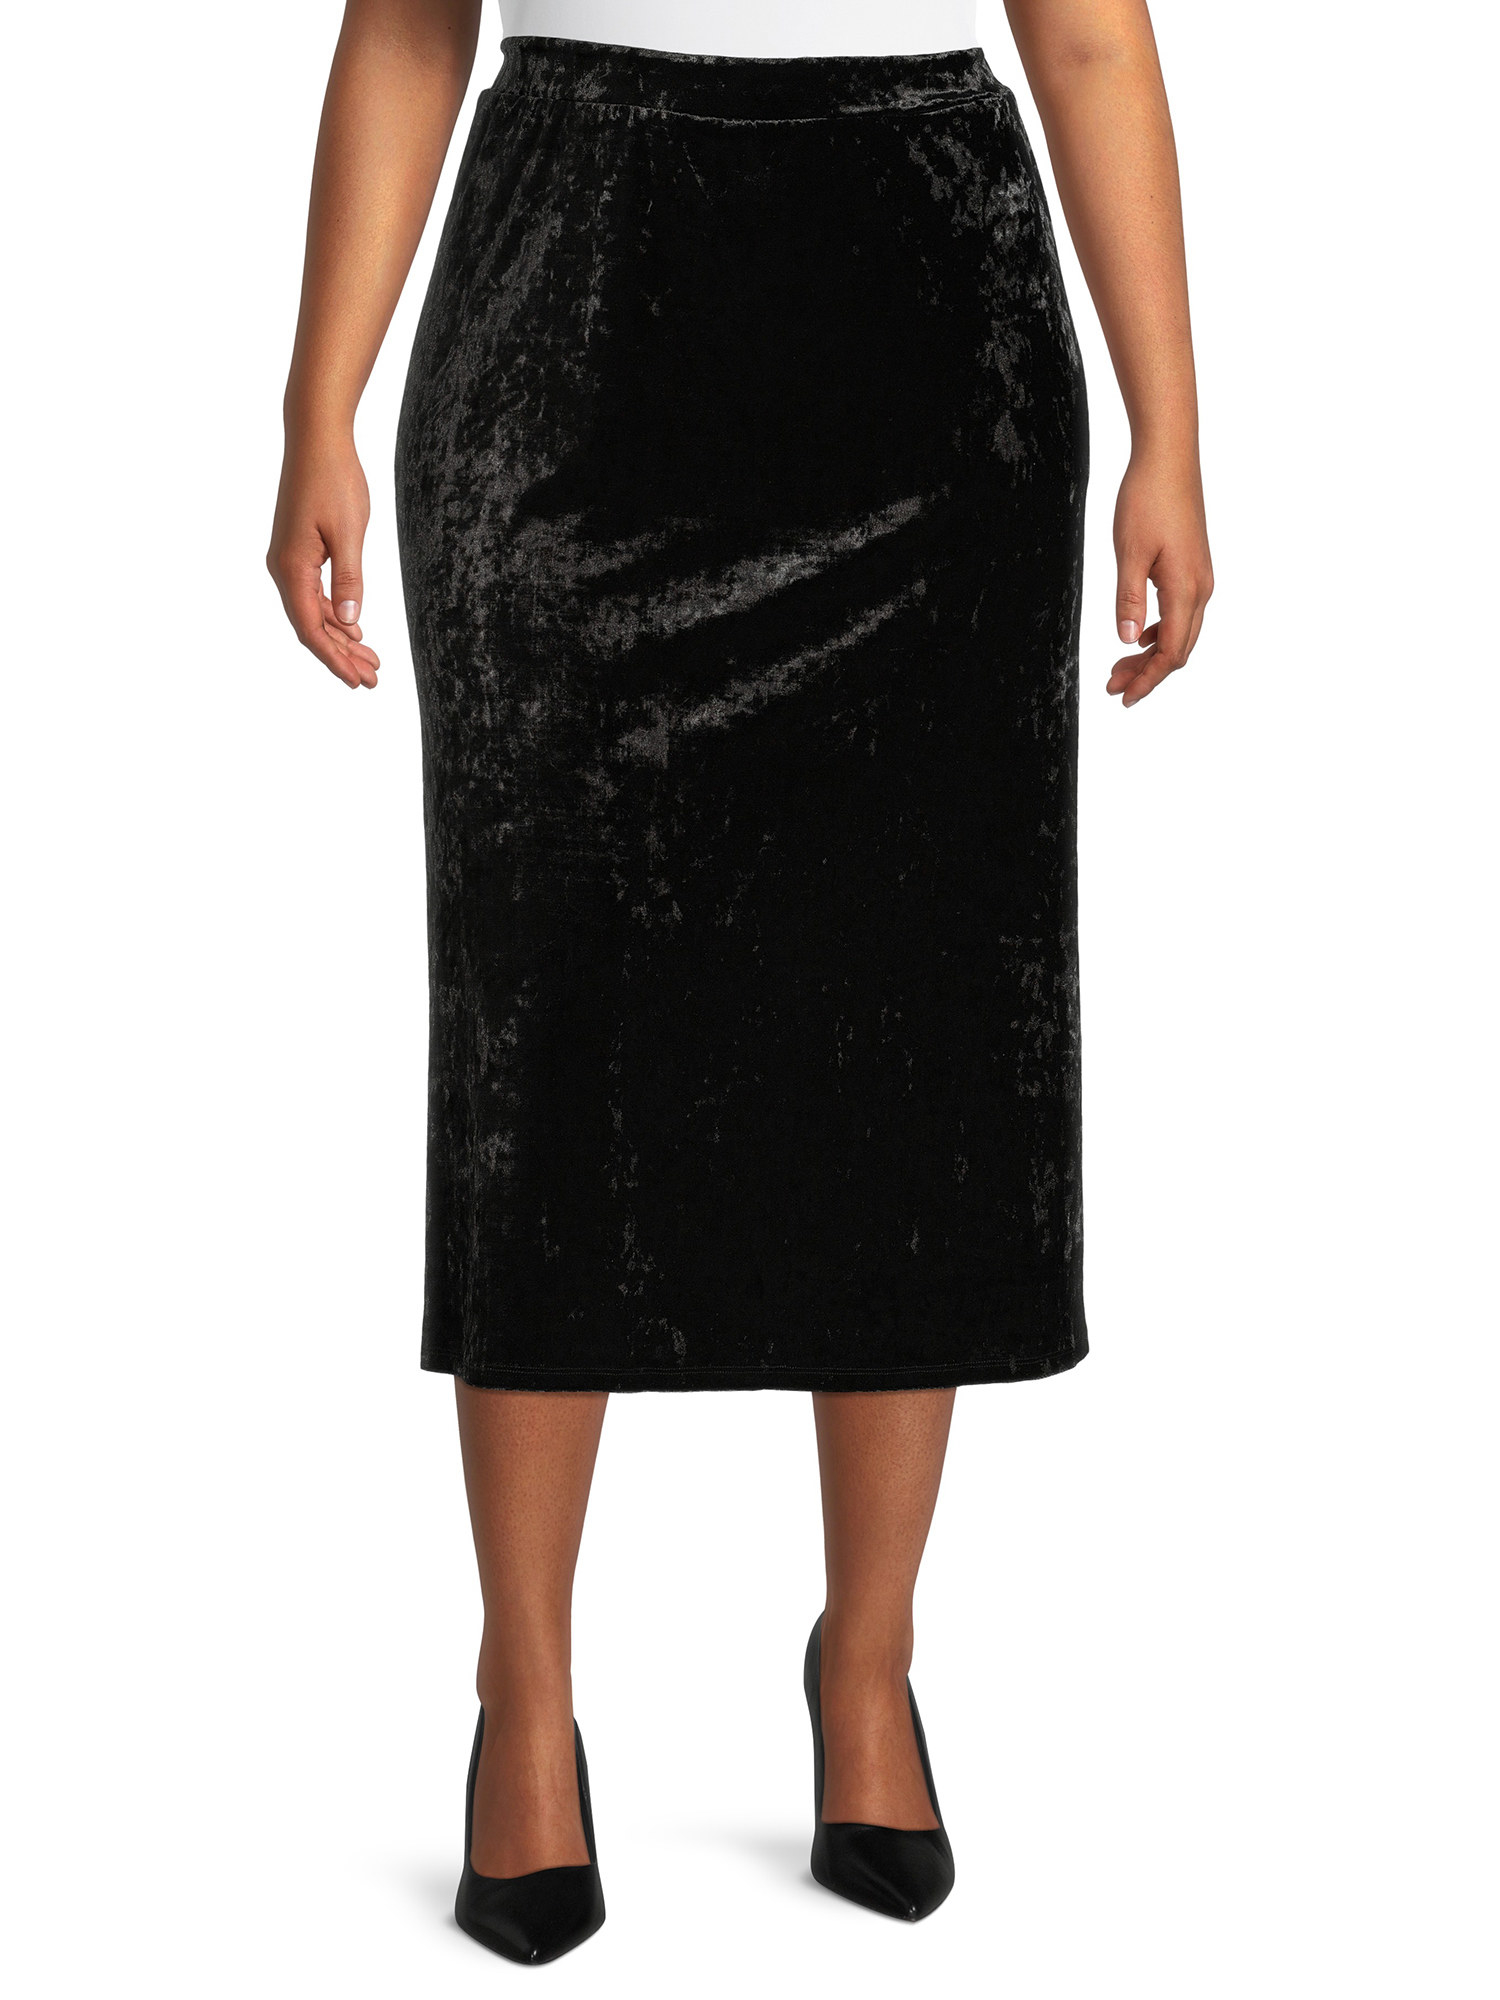 Model wearing crushed-velvet black midi skirt with black pumps